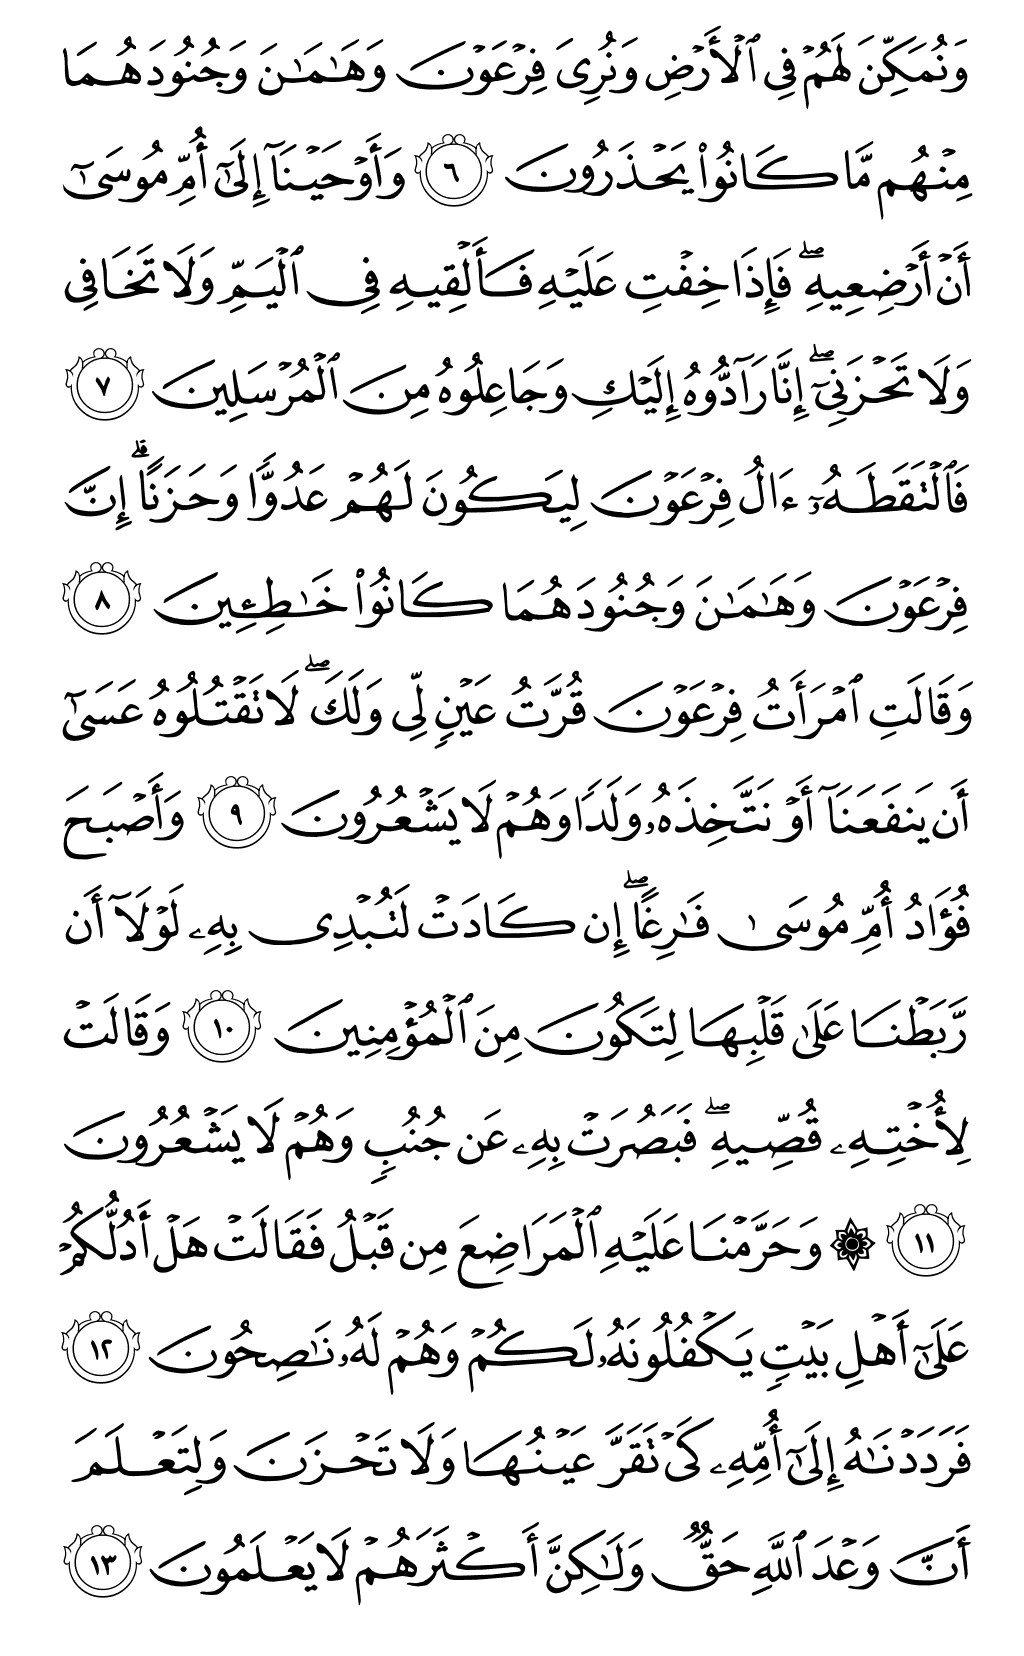 الصفحة رقم 386 من القرآن الكريم